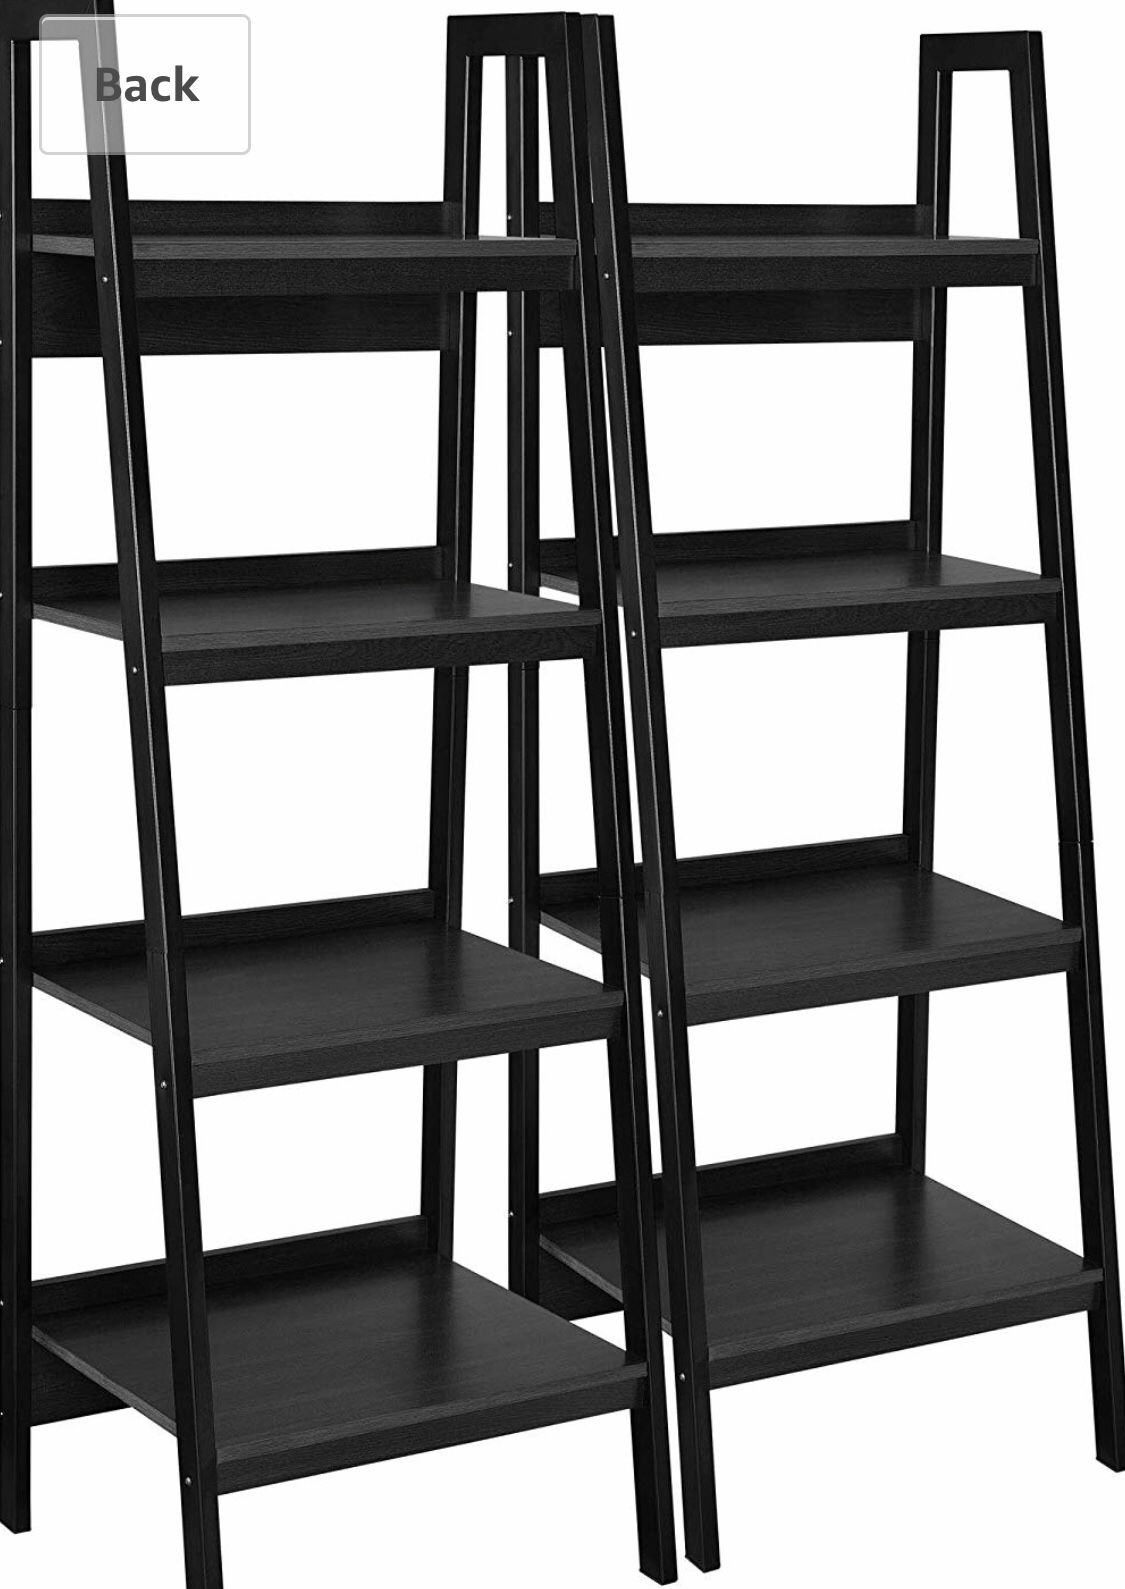 Ameriwood Home Lawrence 4 Shelf Ladder Bookcase Bundle, Black